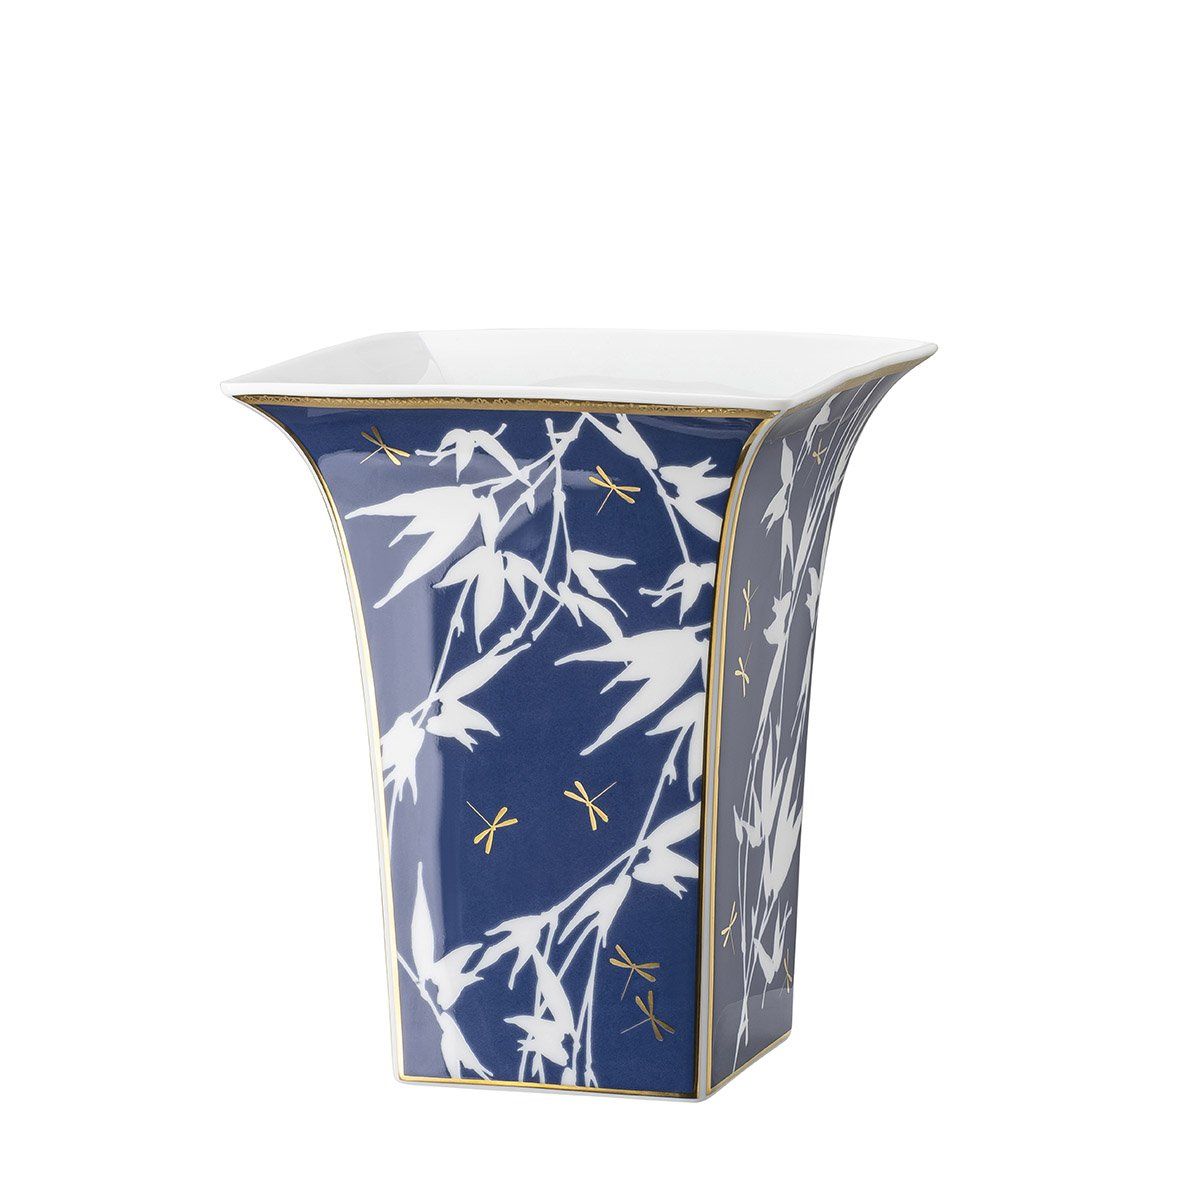 Rosenthal Váza porcelánoVá Heritage Turandot, modrá, 17 cm 14231-404312-26017